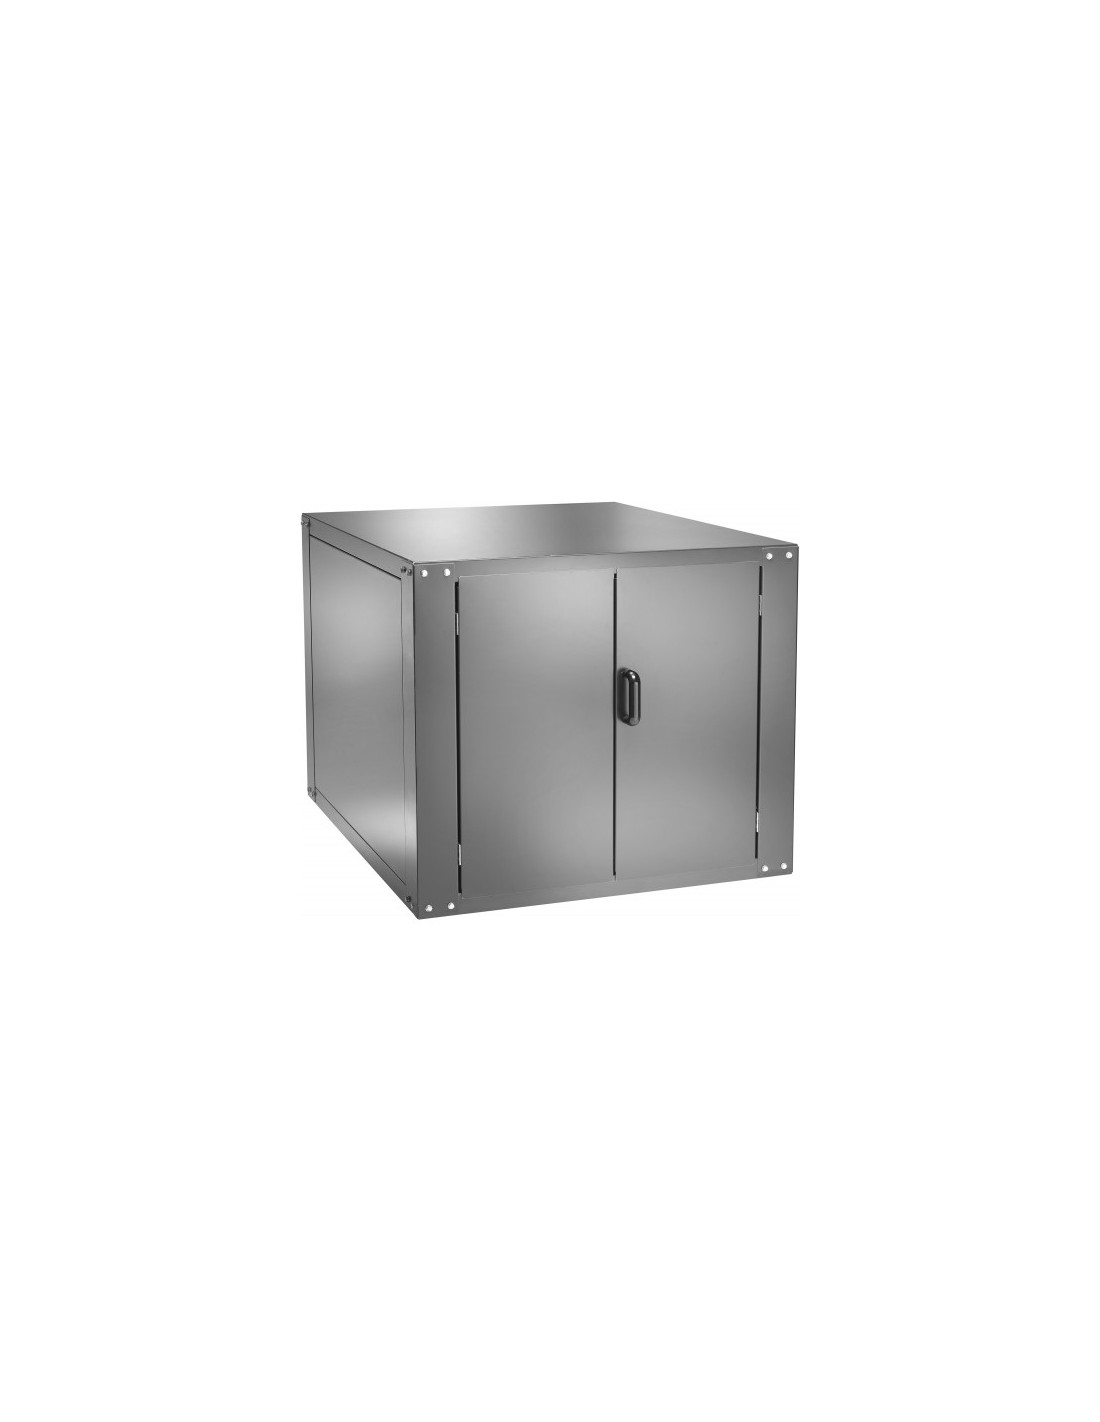 Compartimento de fermentación para horno mod. FML/FMD 9 - Capacidad n. 11 bandejas - Temperatura 0 ÷ 90°C